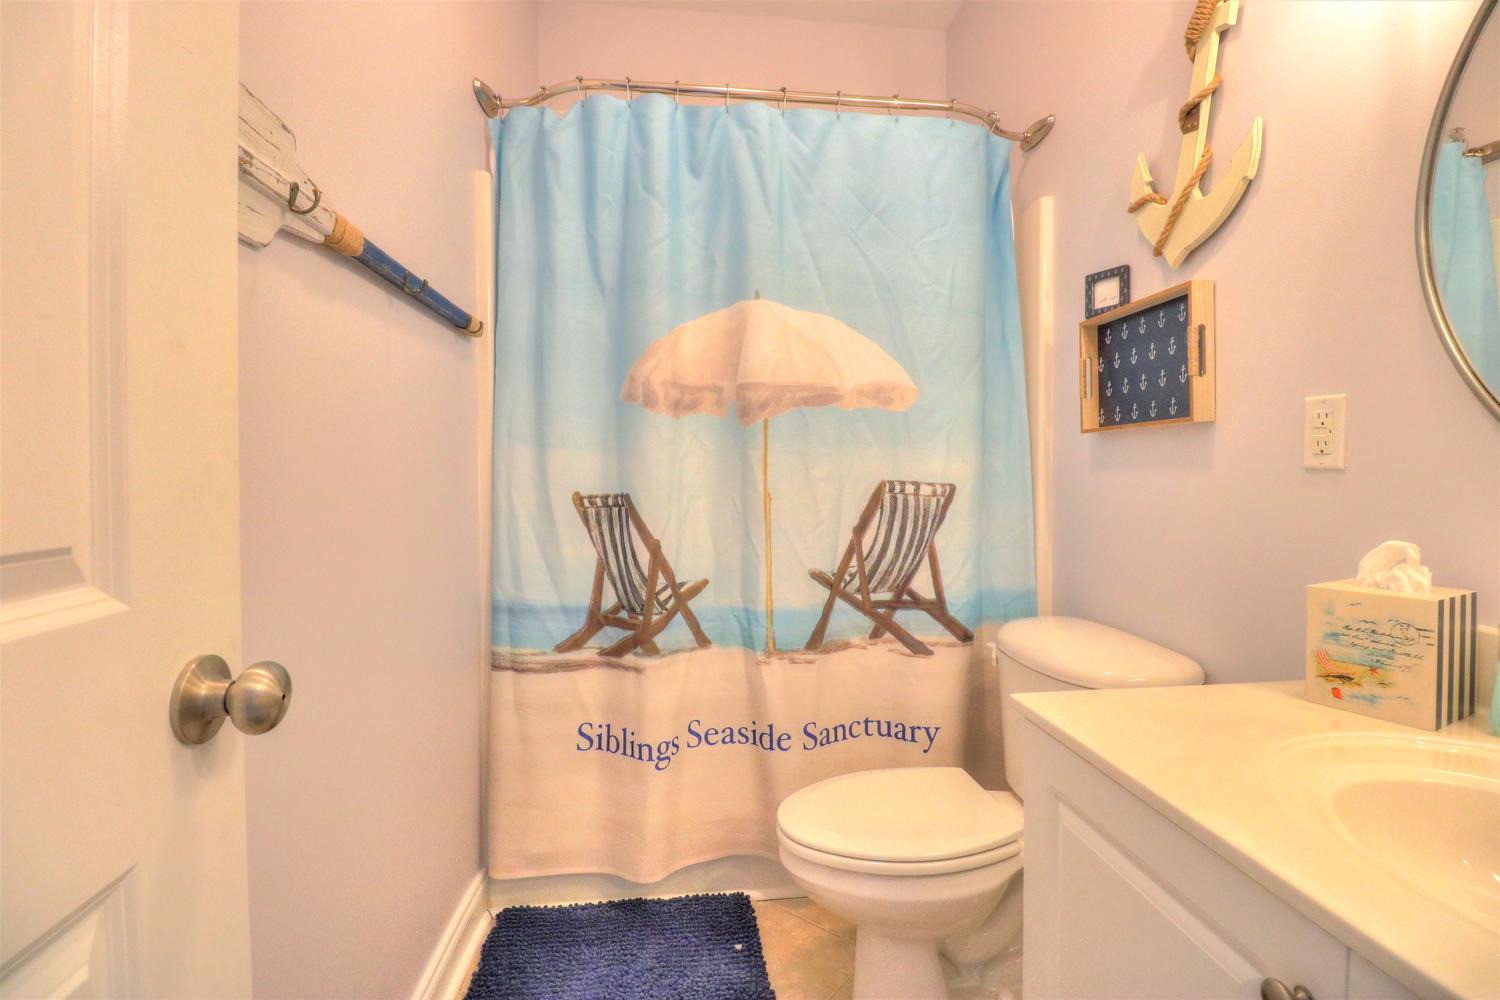 Siblings Seaside Sanctuary-Bathroom